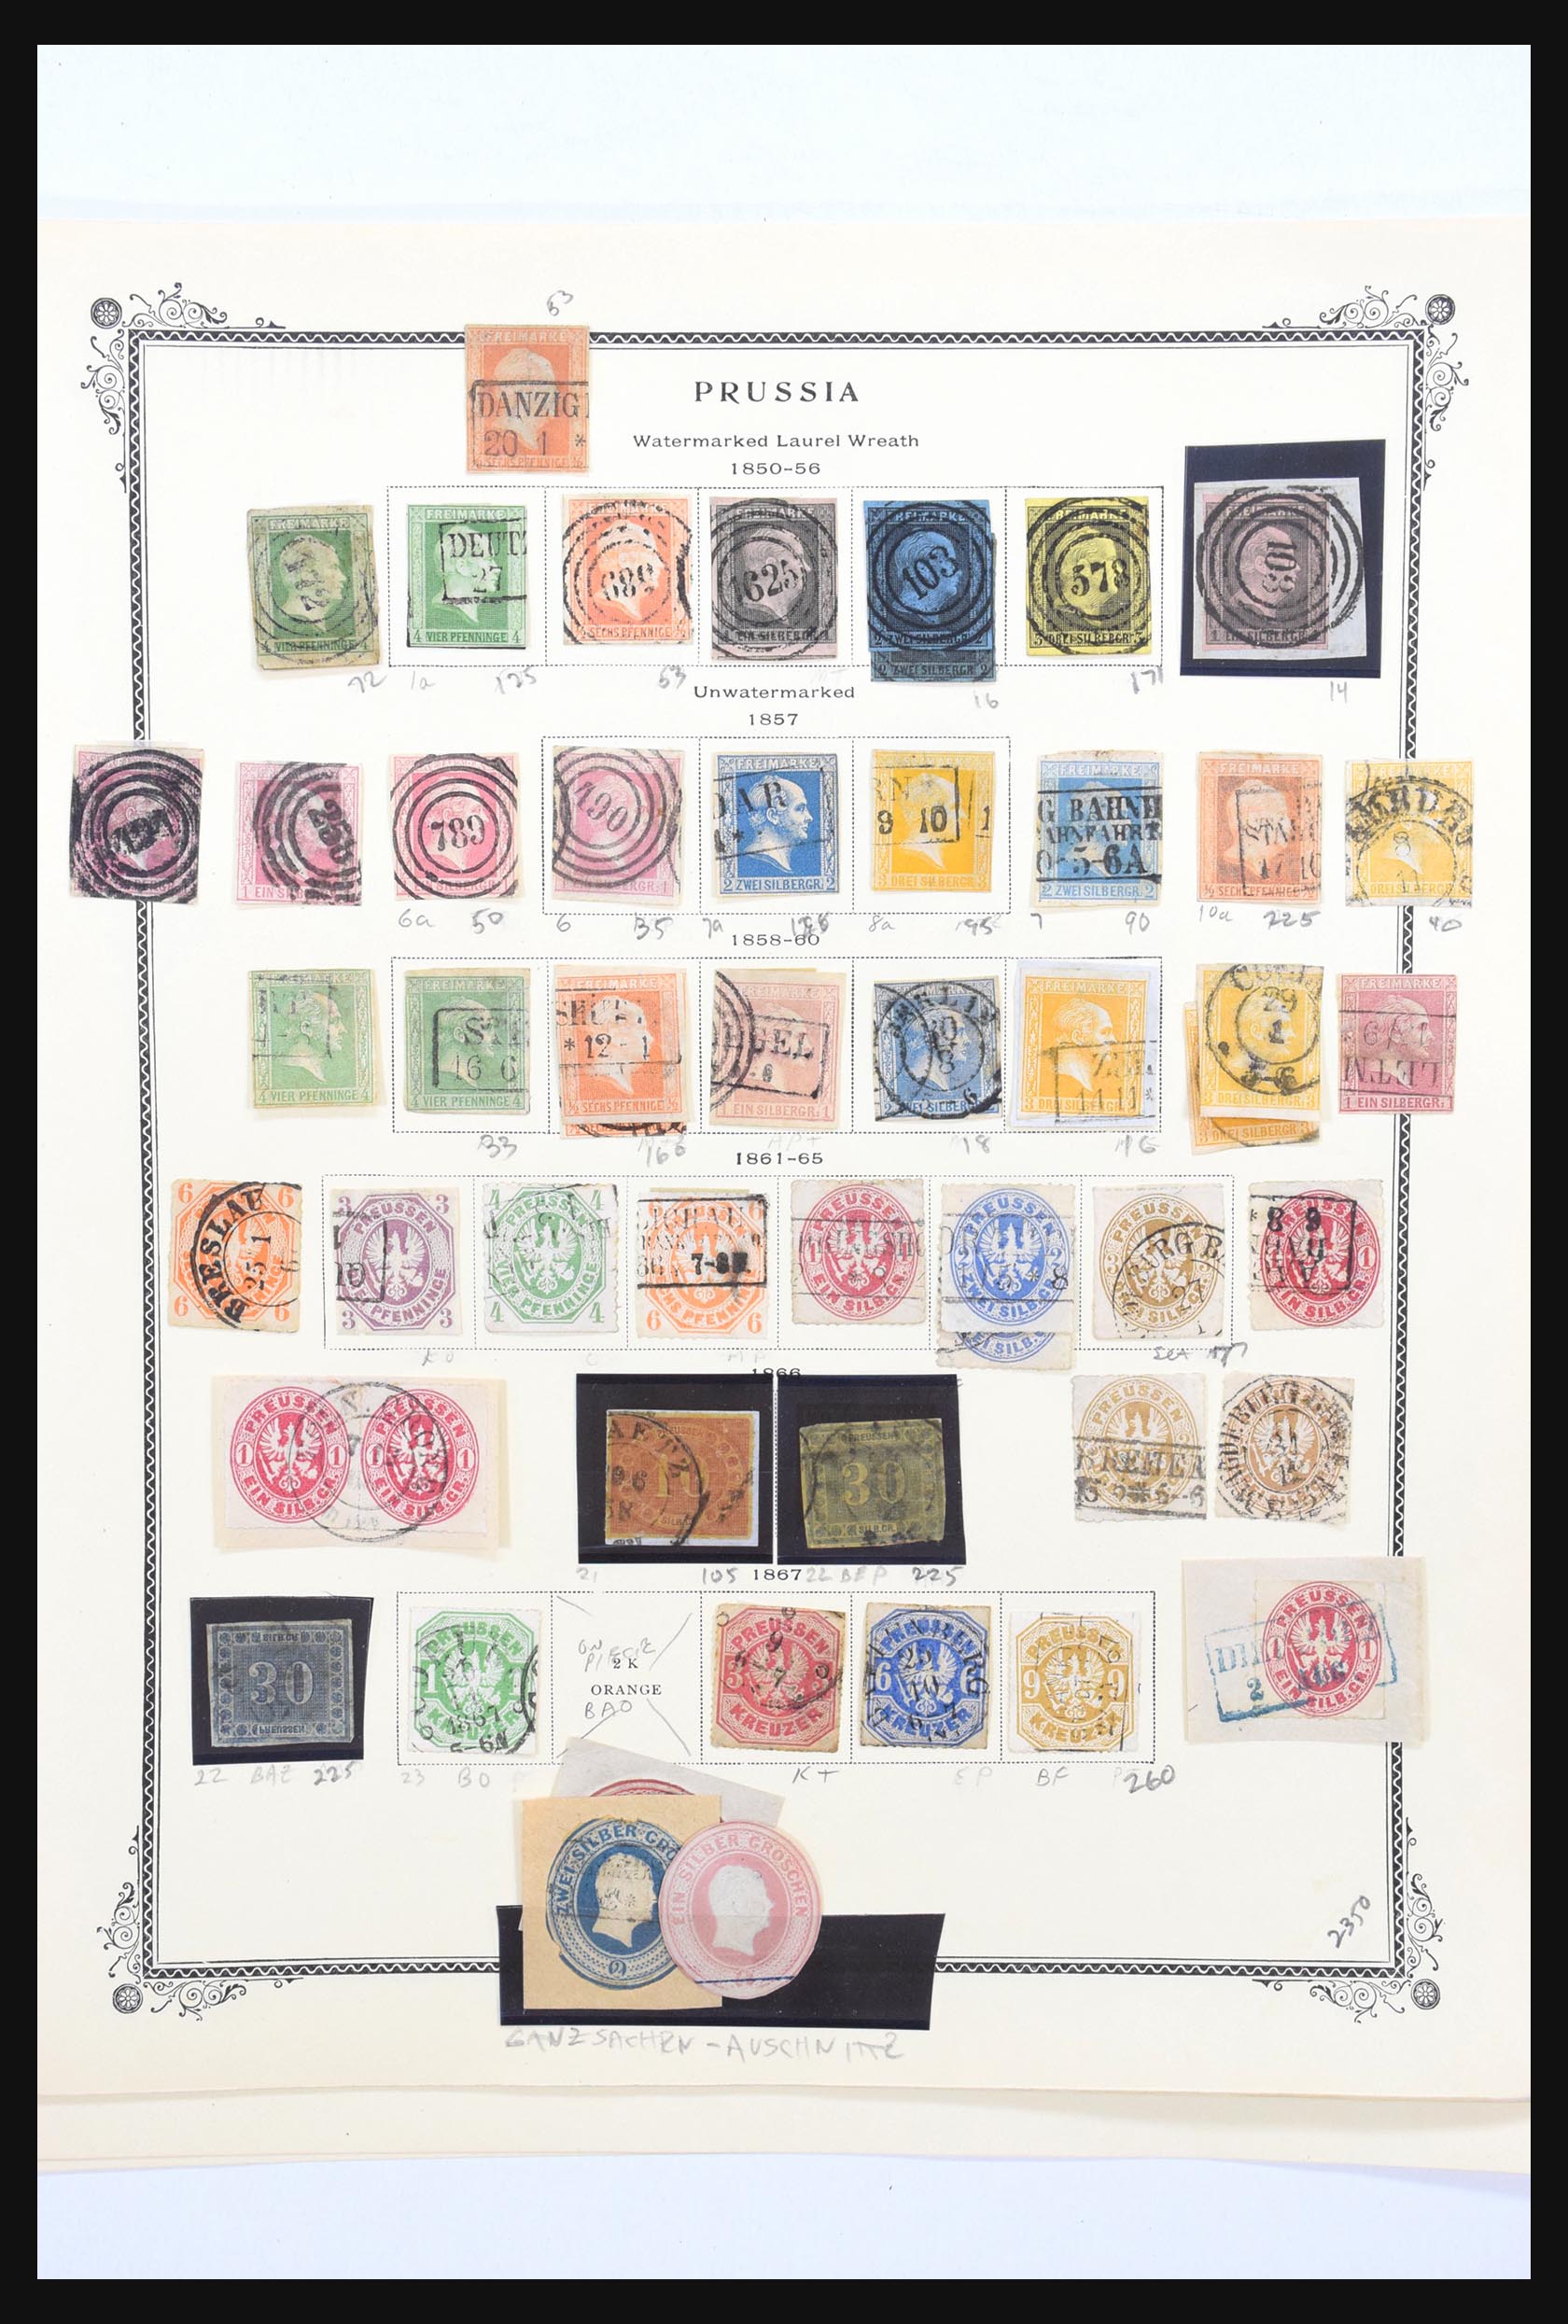 31300 155 - 31300 Duitsland superverzameling 1849-1990.